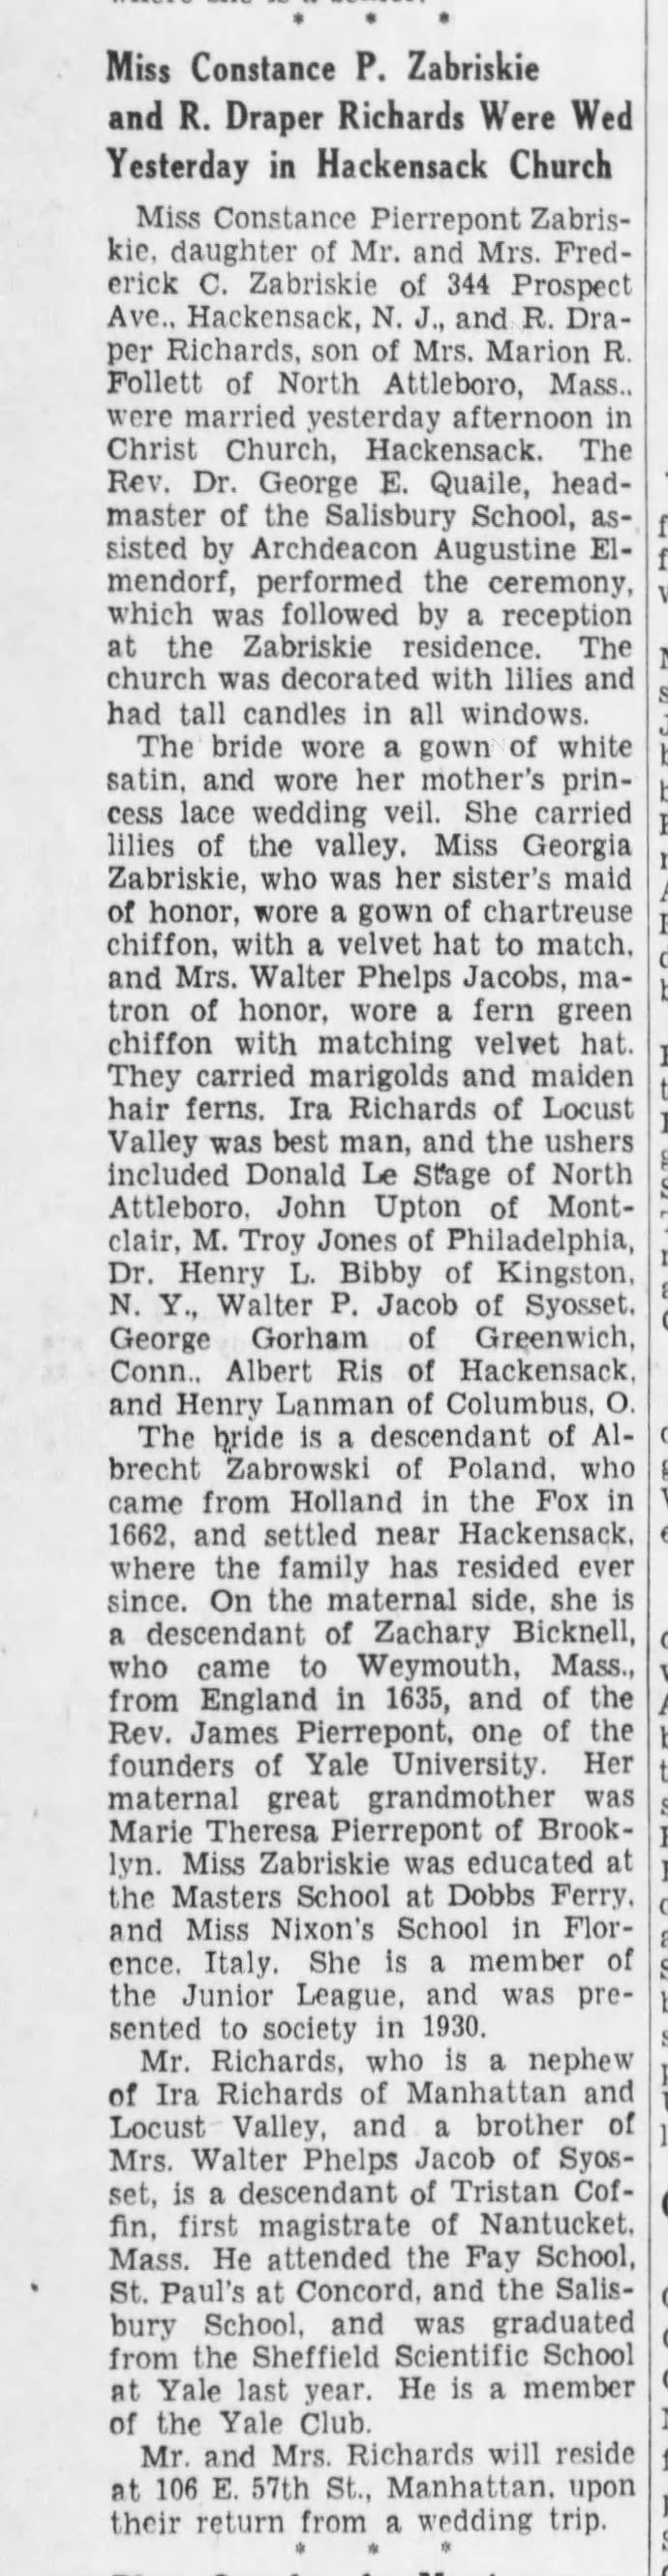 Constance P. Zabriskie-marriage annc. Daughter of Fredrick C. Zabriskie 1933